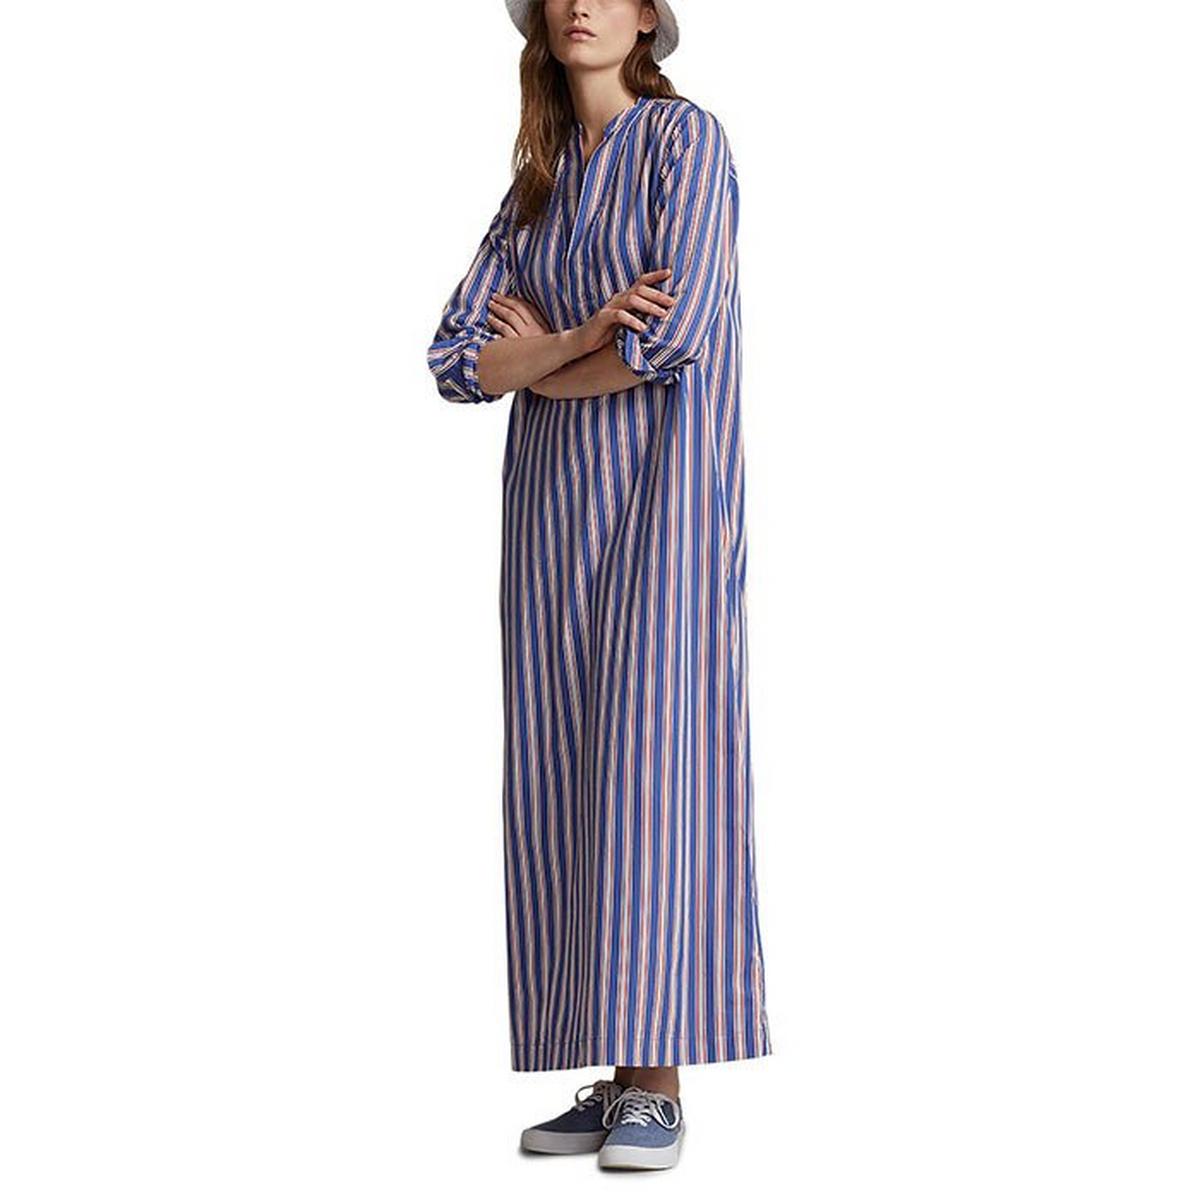 Women's Striped Cotton Long Sleeve Shirt Dress